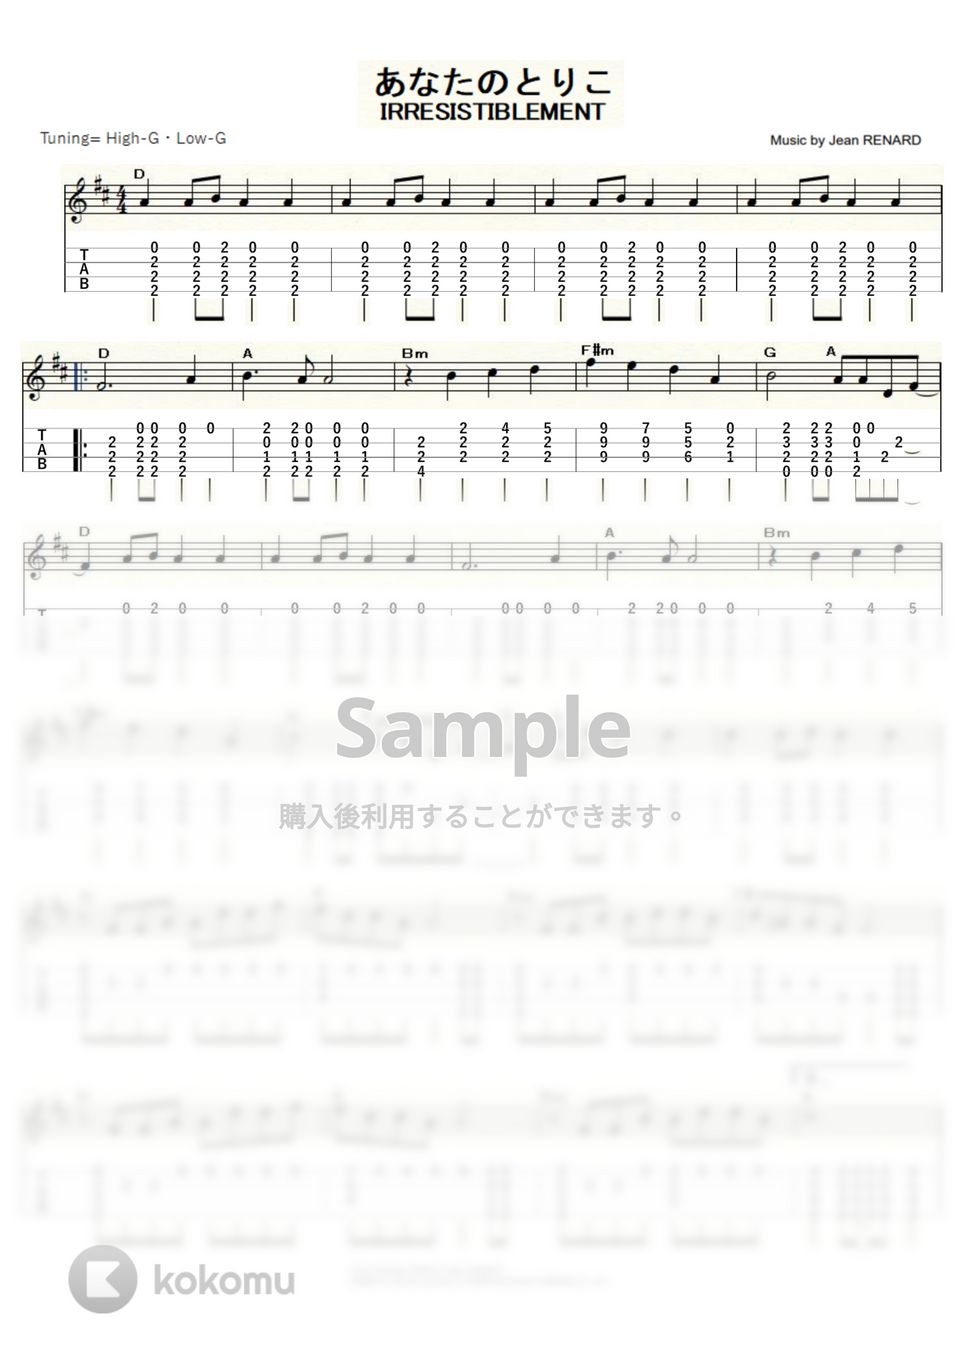 シルヴィ・ヴァルタン - あなたのとりこ (ｳｸﾚﾚｿﾛ/High-G・Low-G/中級) by ukulelepapa